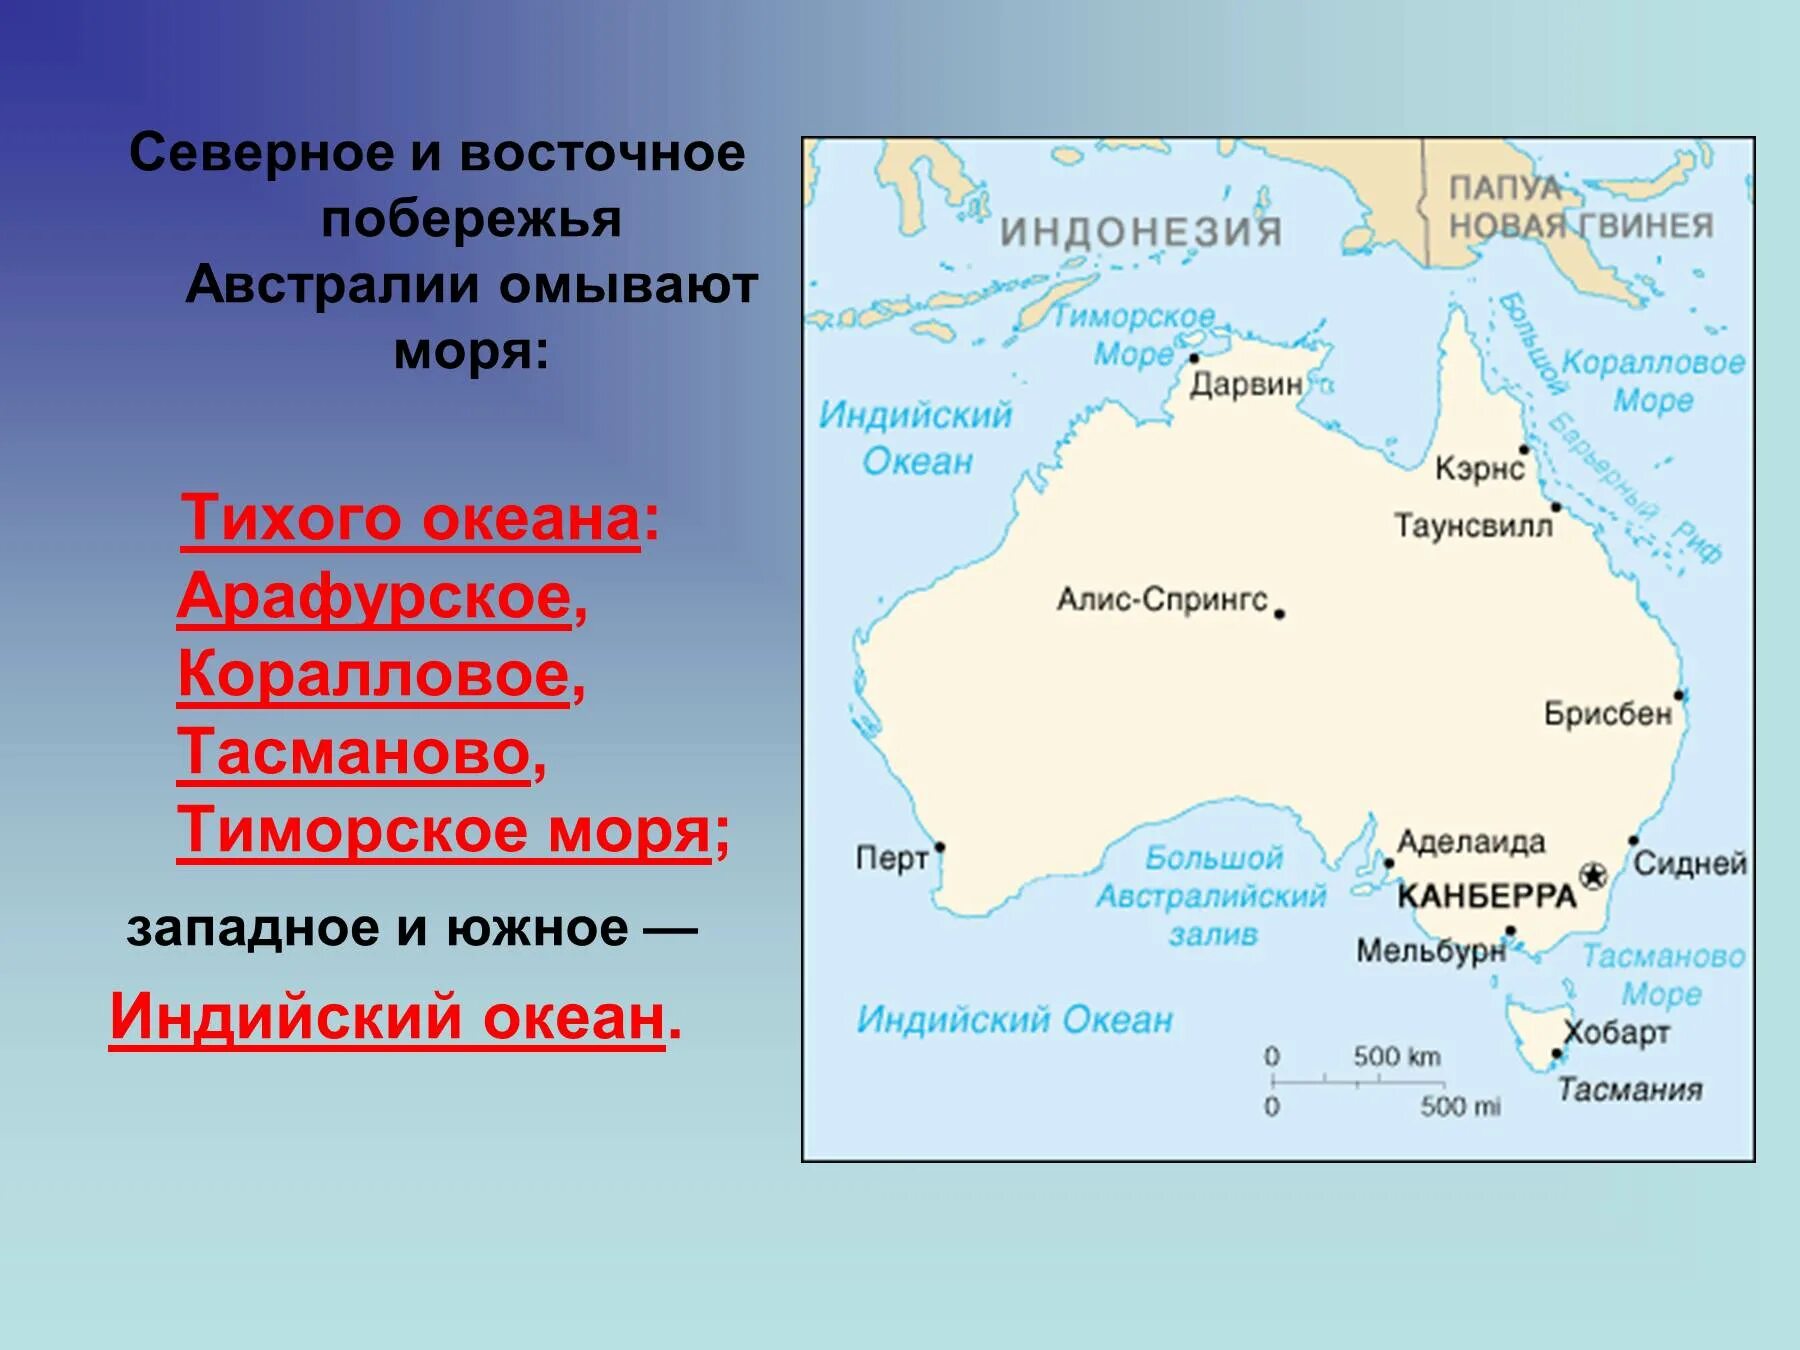 Южный океан омывает австралию. Моря: тасманово, Тиморское, коралловое, Арафурское.. Тасманово море на карте Австралии. Австралия моря: Тиморское, Арафурское, коралловое, тасманово.. Австралия моря и океаны омывающие материк.